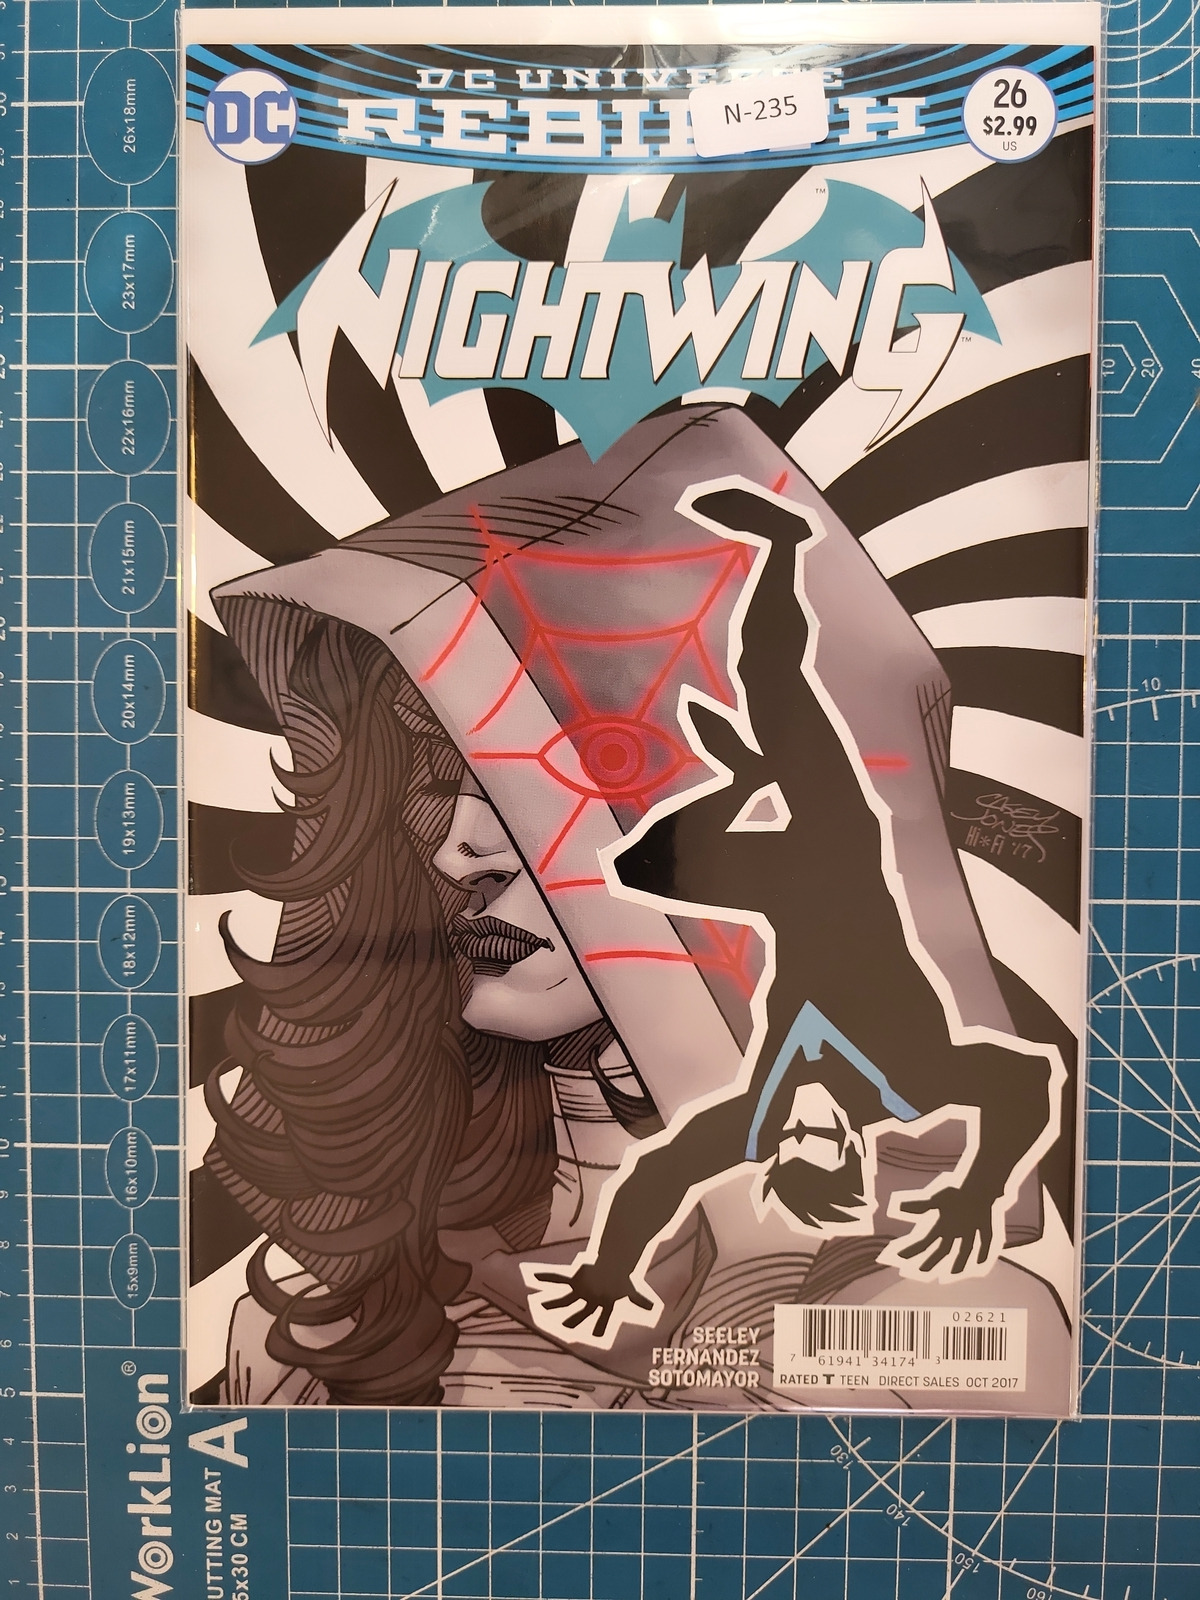 NIGHTWING #26B VOL. 4 9.0+ VARIANT DC COMIC BOOK N-235